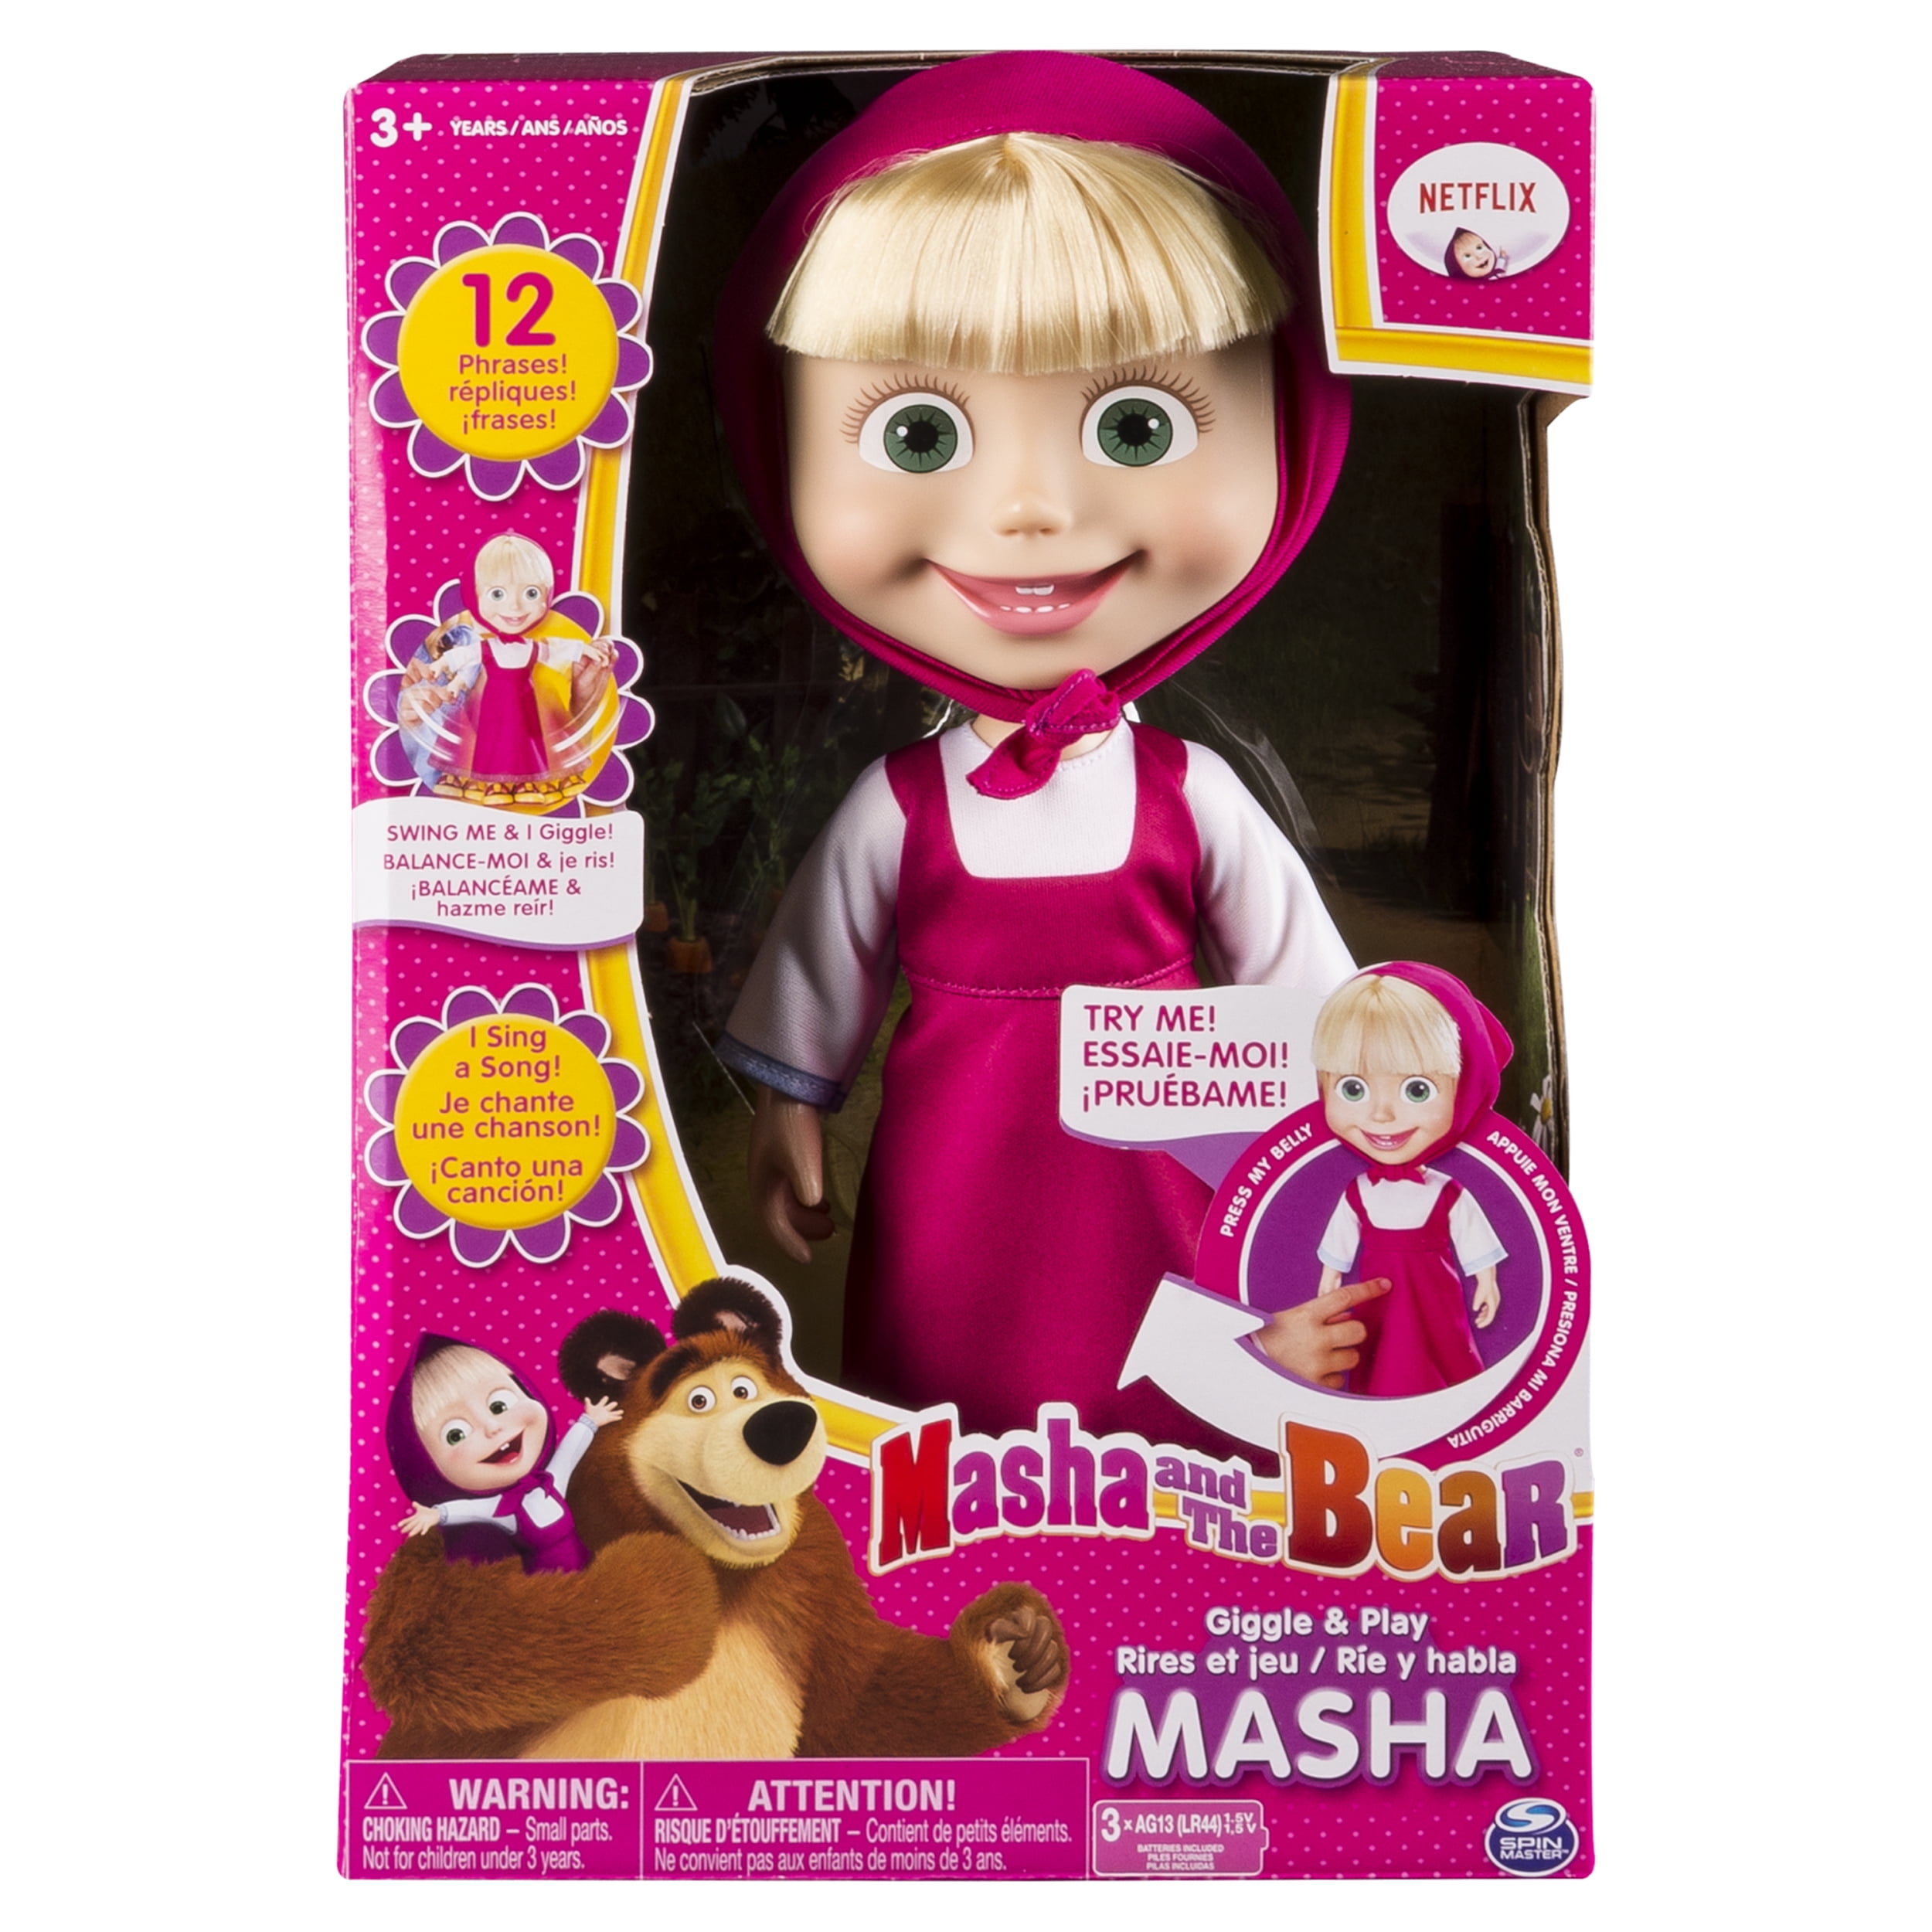 Masha and the Bear Medved doll Masha Bear toys figures 